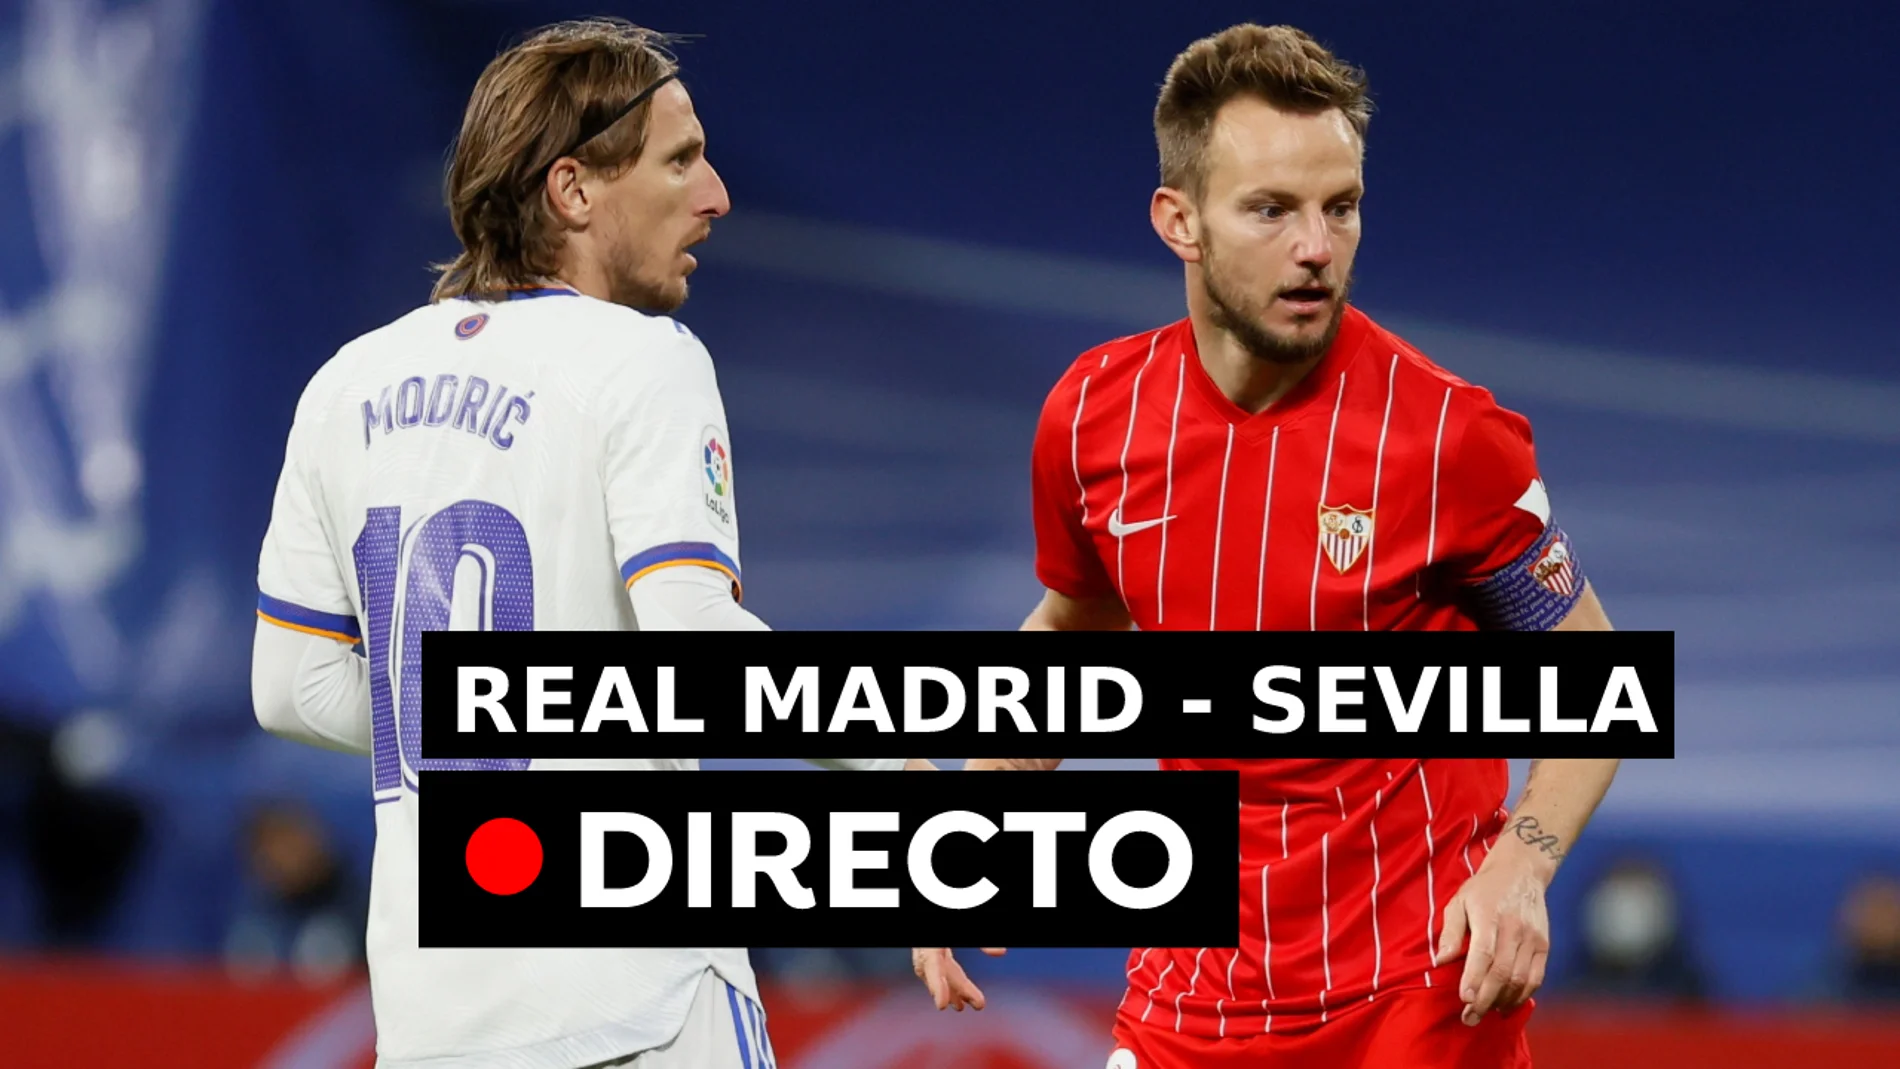 Real Madrid - Resultado, resumen y goles de la Santander, directo (2-1)